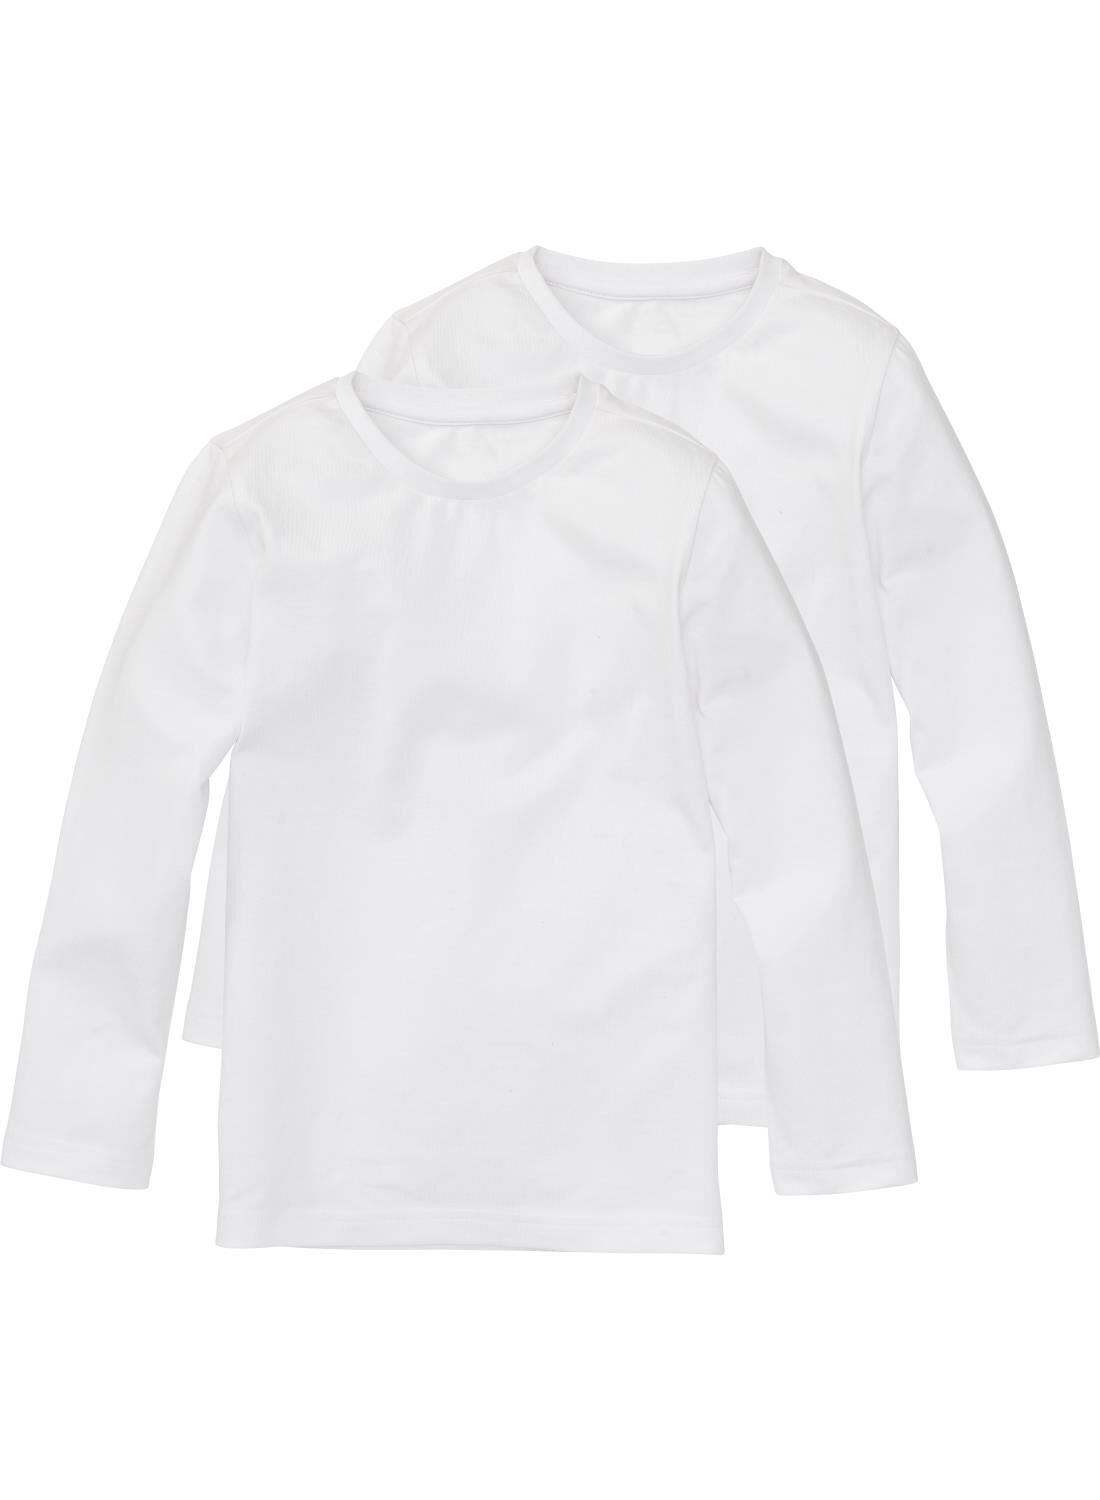 KINDER Hemden & T-Shirts Gerippt Kiabi T-Shirt Rabatt 85 % Schwarz 16Y 